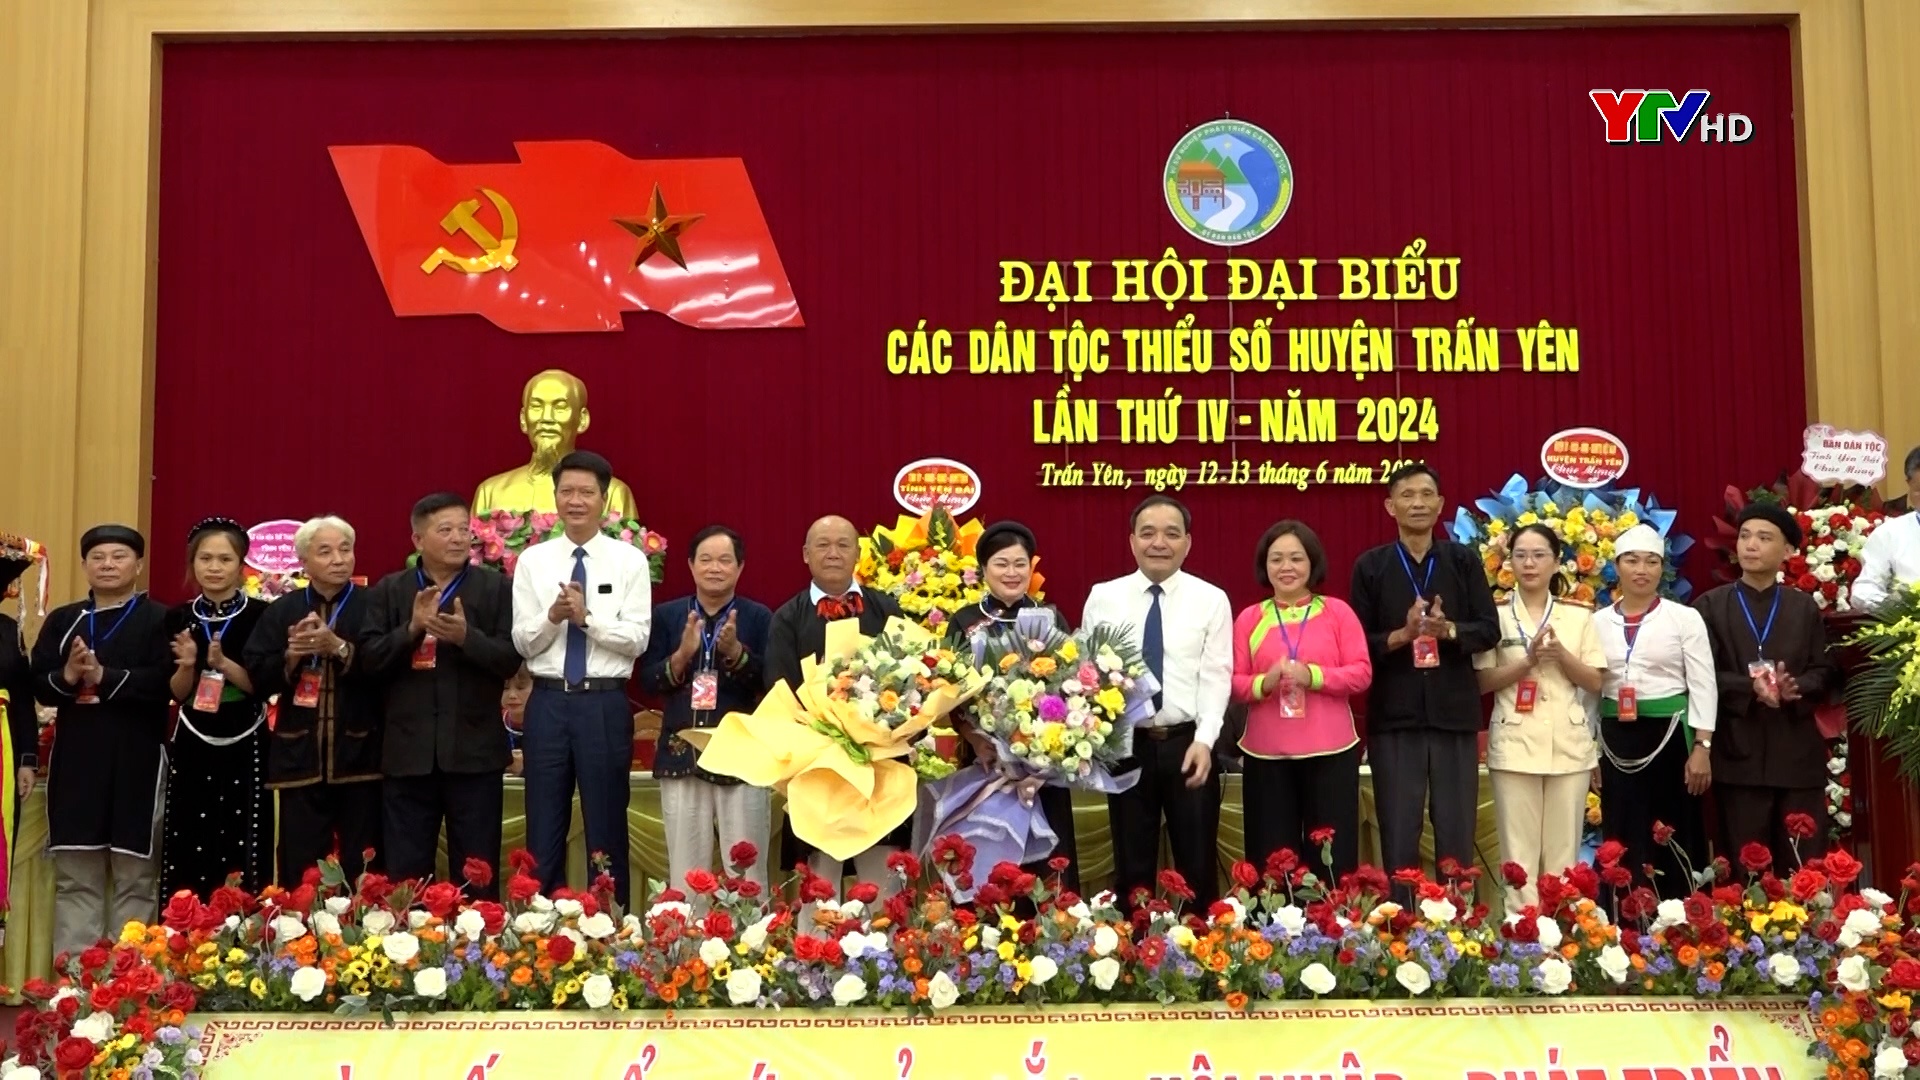 Đại hội Đại biểu các dân tộc thiểu số huyện Trấn Yên lần thứ IV